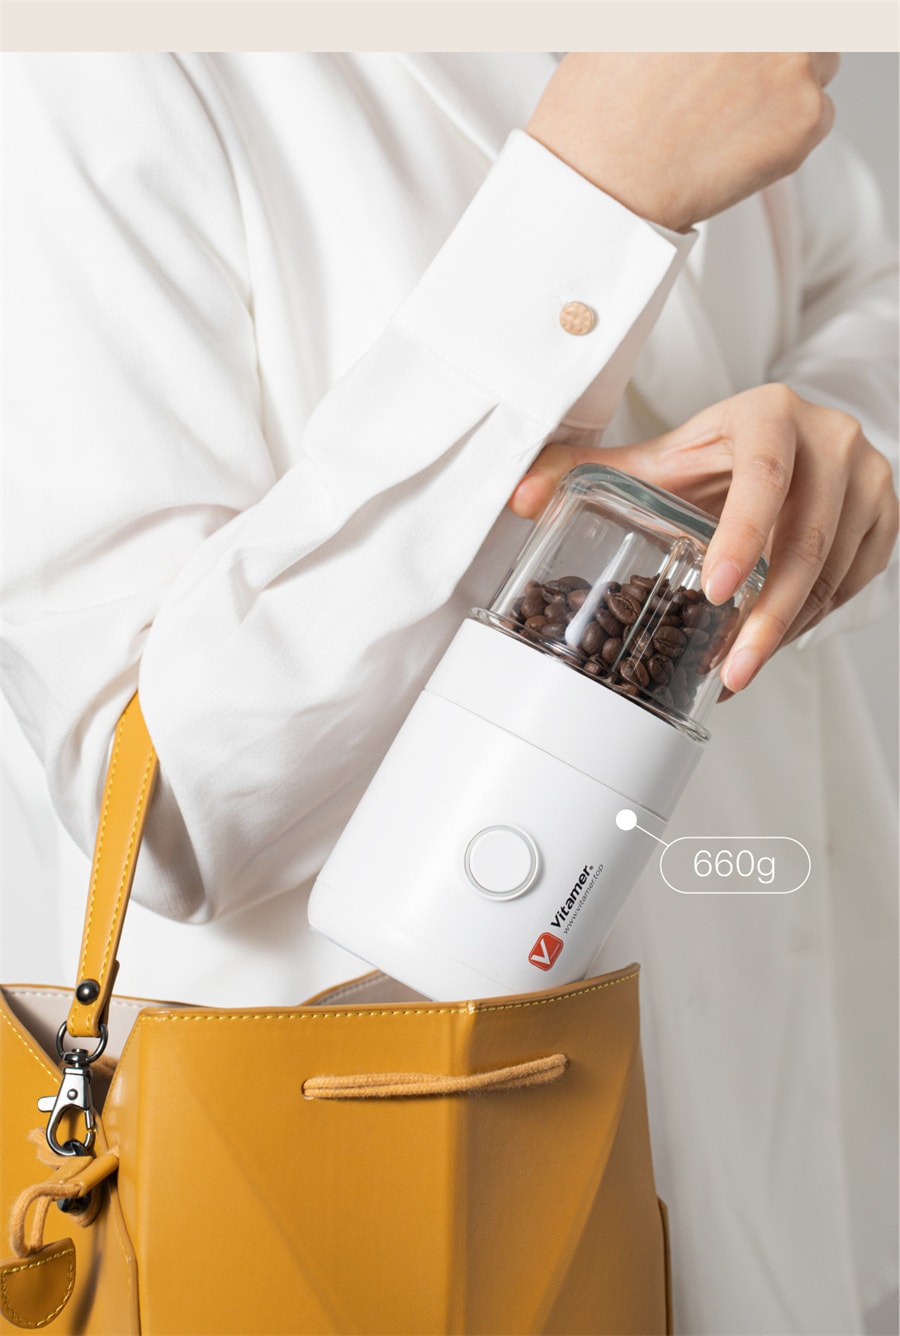 【中國直郵】Vitamer維他命家用研磨機無線便攜式 白色